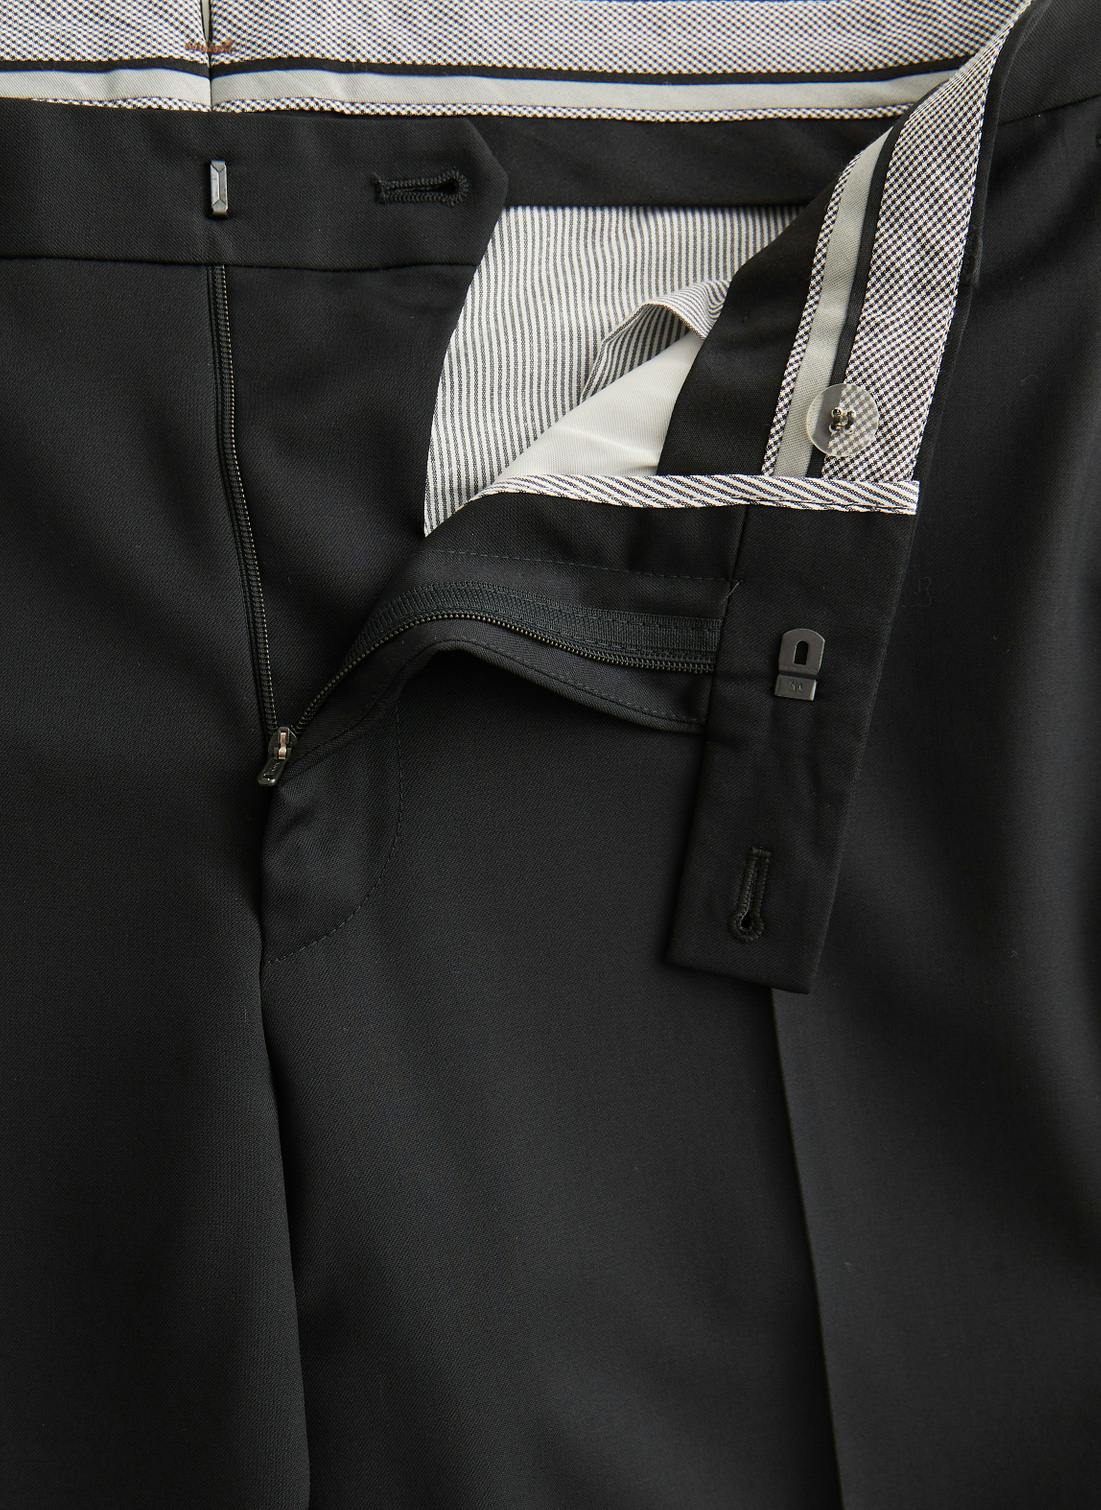 Jack Prestige Suit Trouser